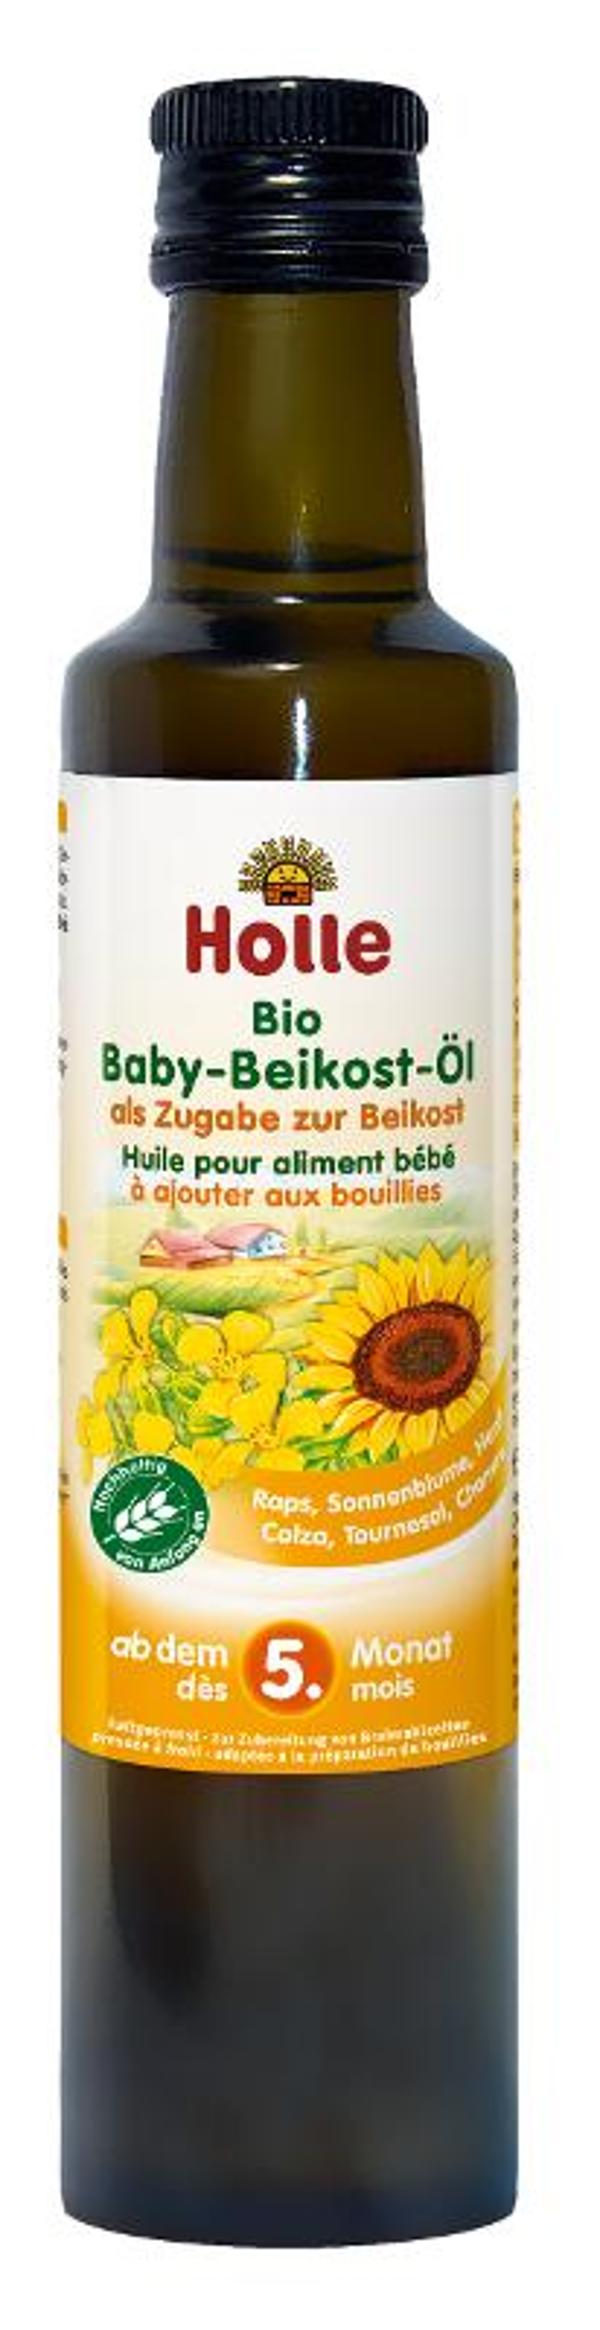 Produktfoto zu Beikostöl f. Säuglingsnahrung